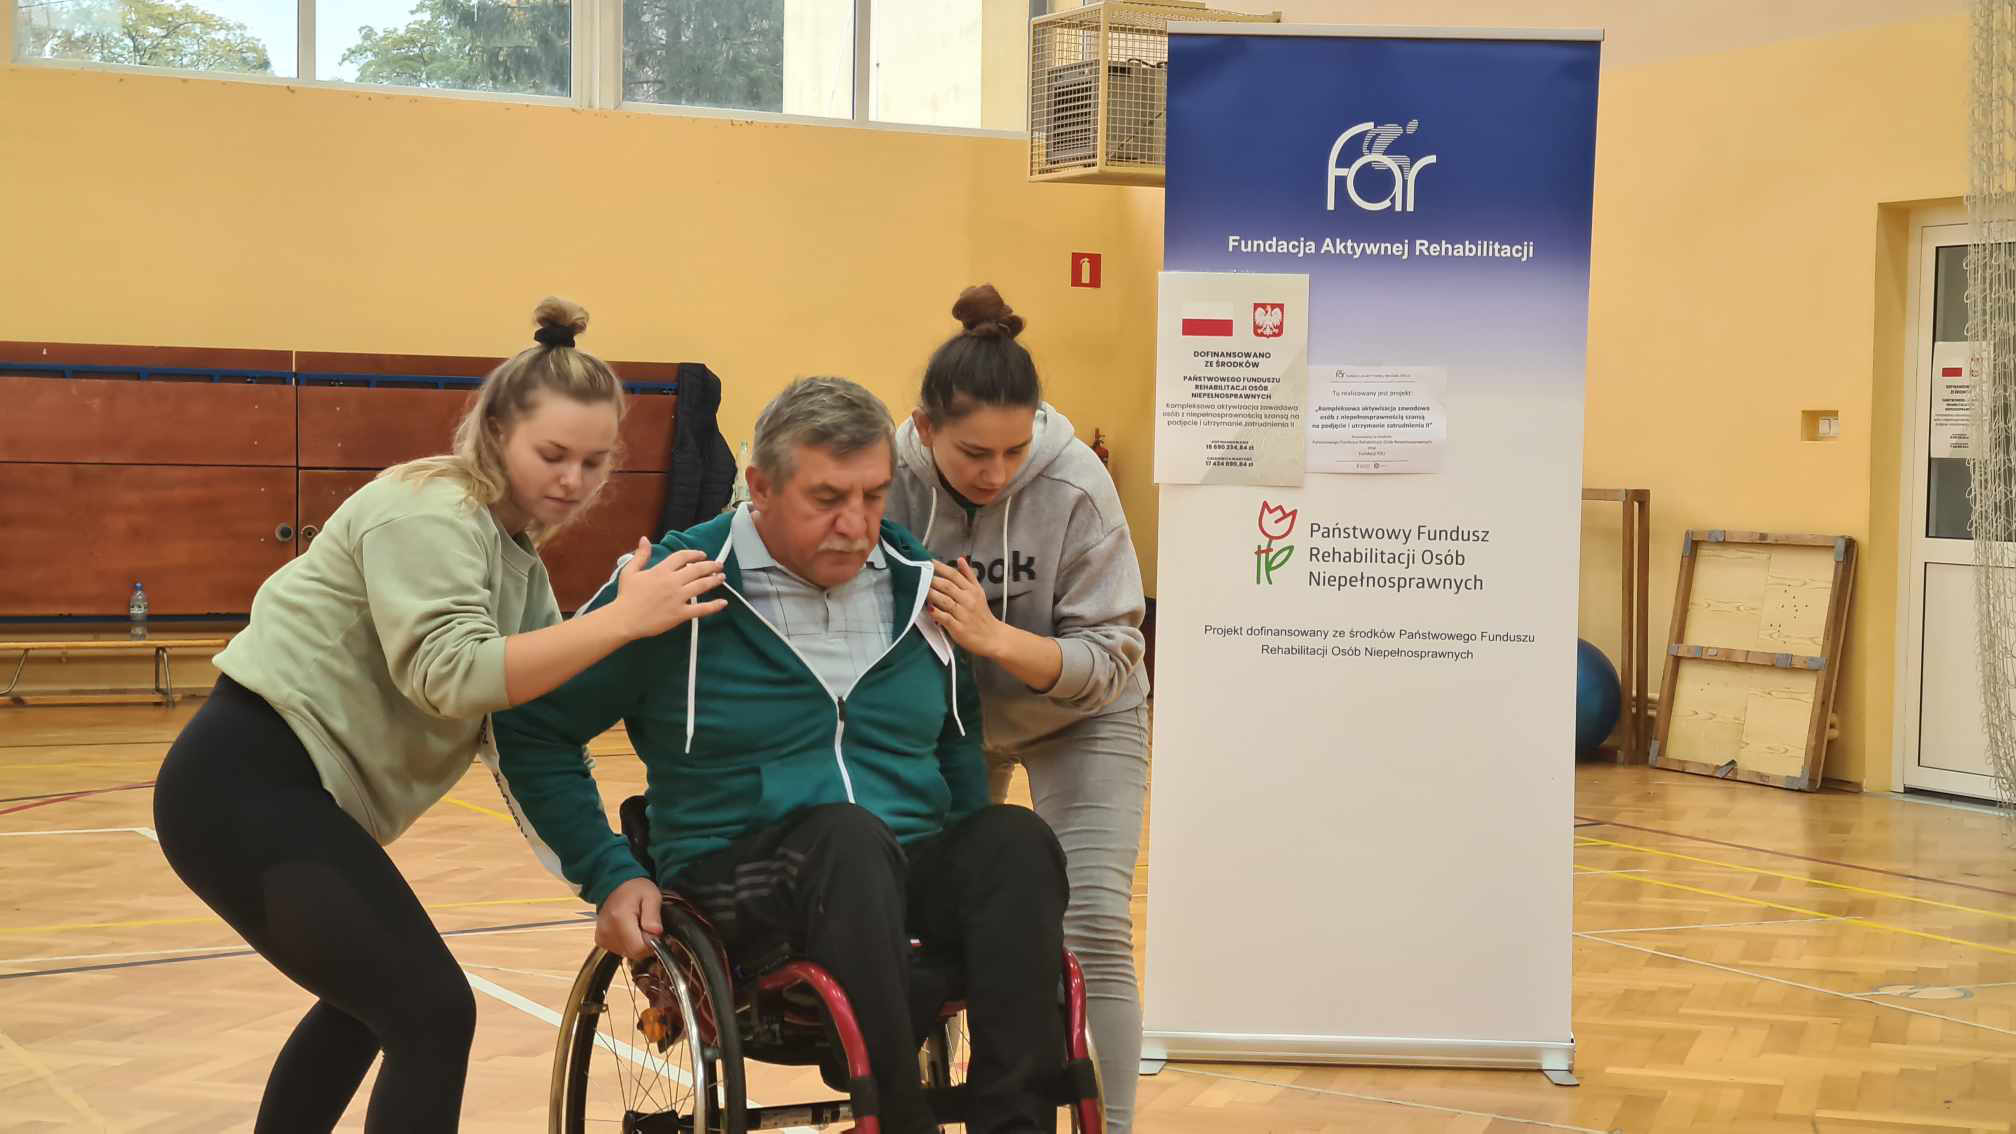 WAZ w Czudcu, ćwiczenia na sali. Na zdjęciu uczestnik warsztatu poruszający się na wózku inwalidzkim, asekurowany przez dwie osoby, uczy się przejeżdżać przez progi.